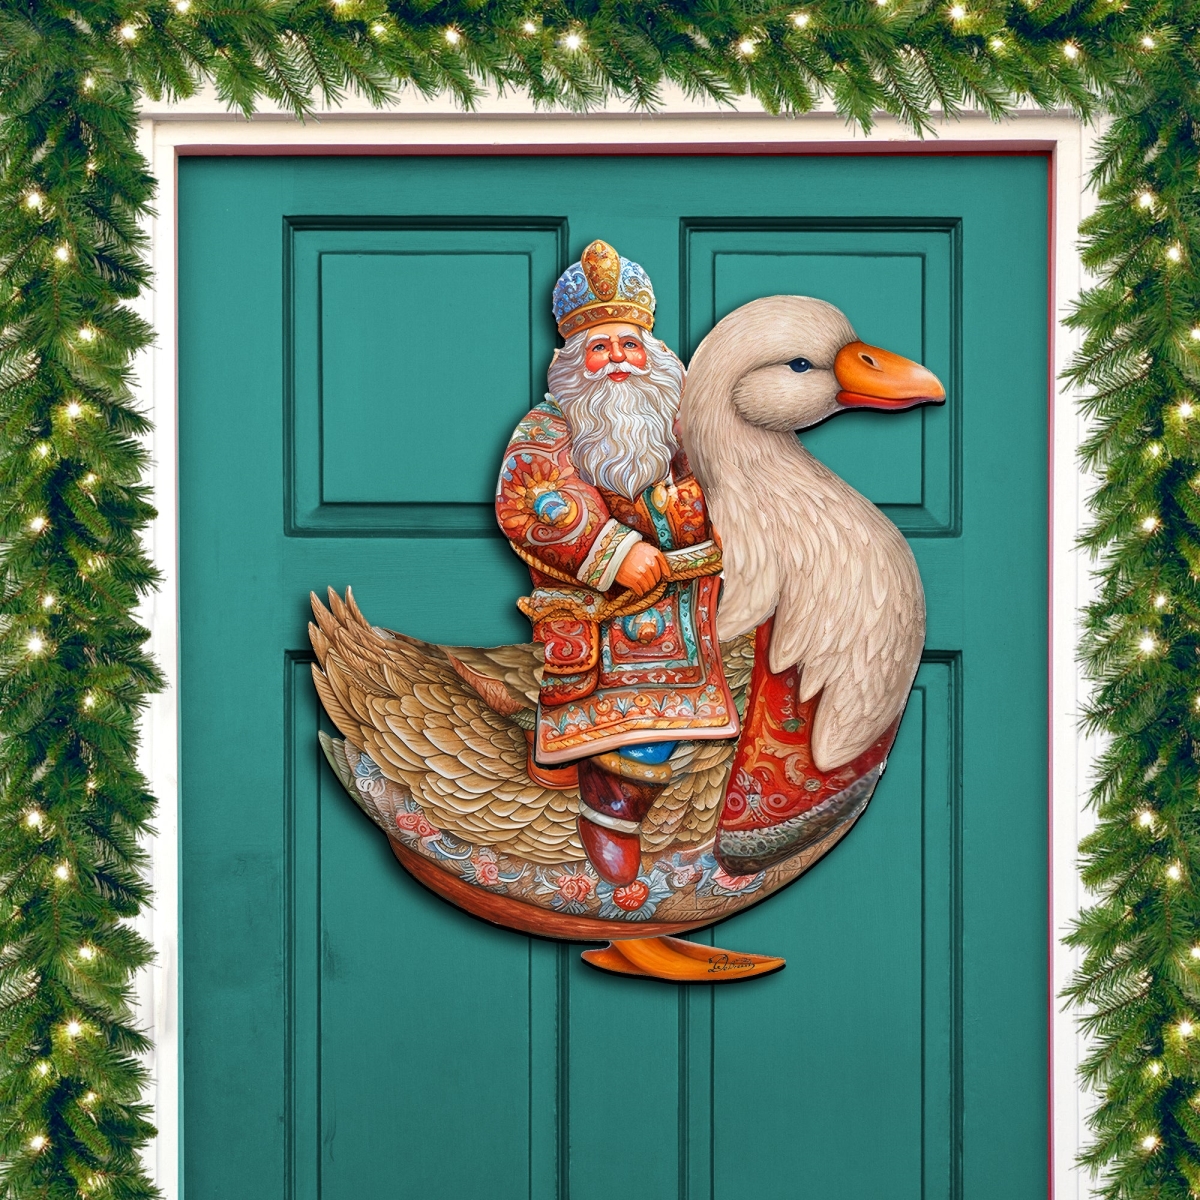 Designocracy 8611063H 24 x 18 in. Charming Santa Riding Goose Holiday Christmas Santa Snowman Door Decor